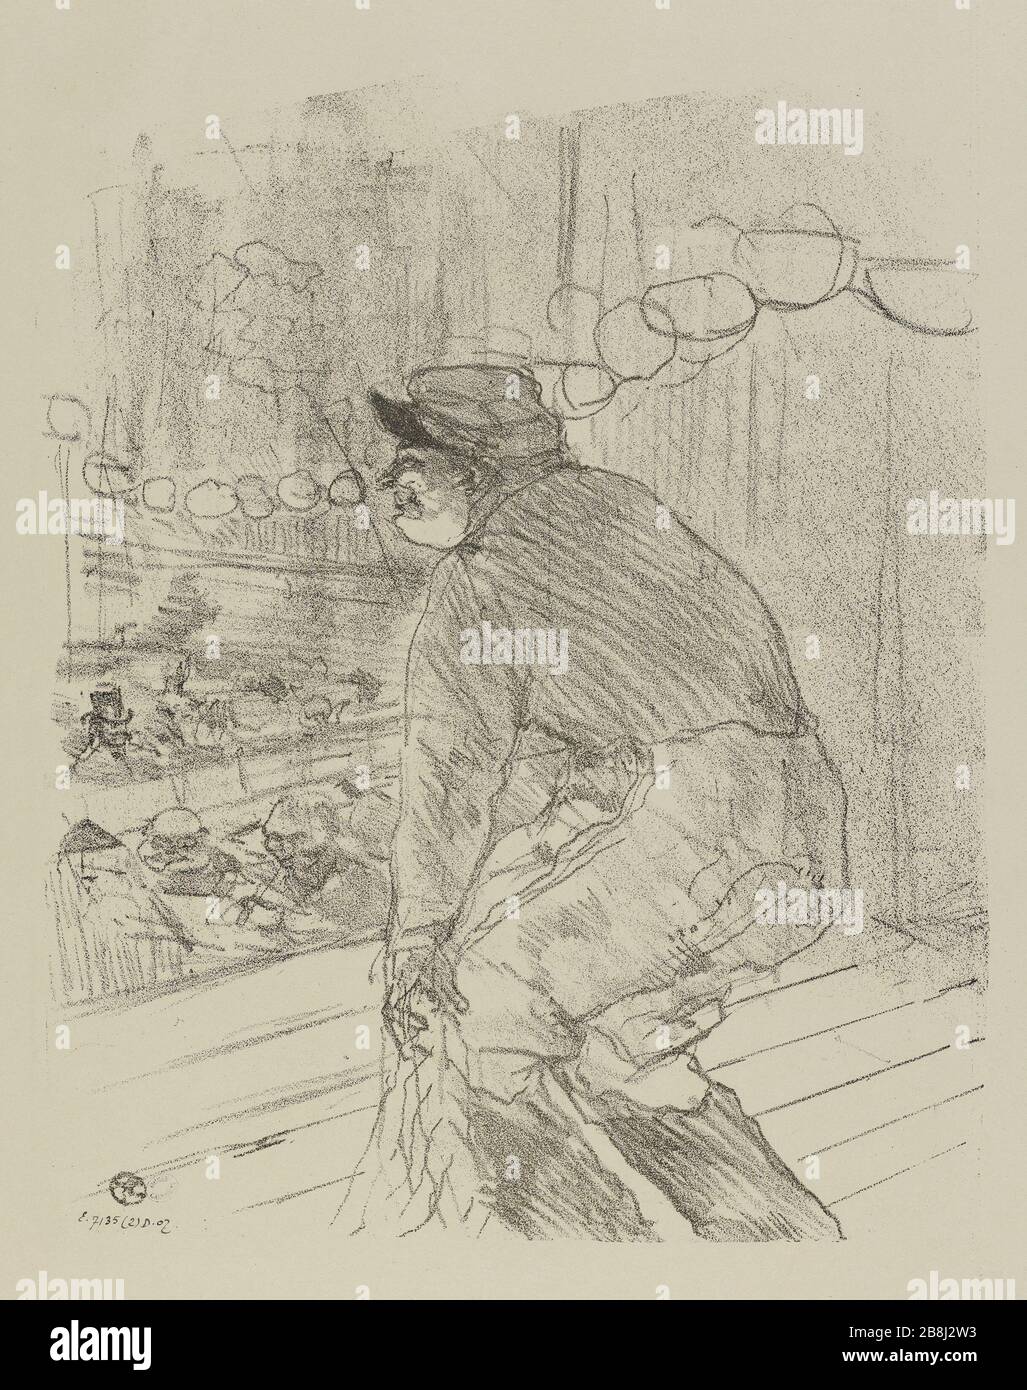 POLIN DEN BOTSCHAFTERN Henri de Toulouse-Lautrec (1864-1901). "Polin aux Ambassadeurs". Lithographie au crayon. Paris, musée Carnavalet. Stockfoto